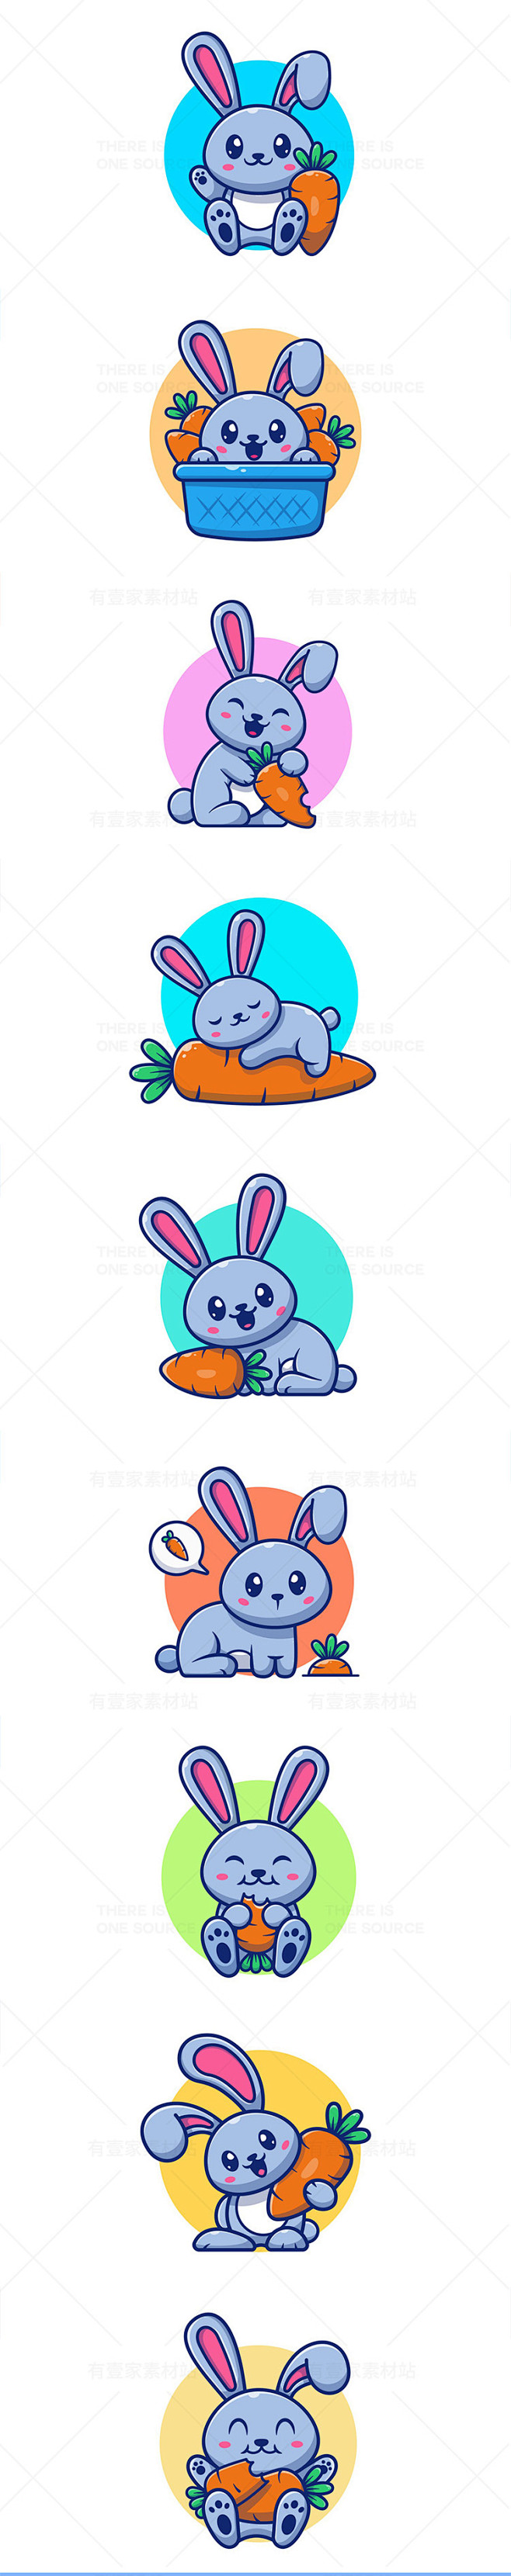 卡通可爱吉祥物动物小兔子吃胡萝卜ip形象...